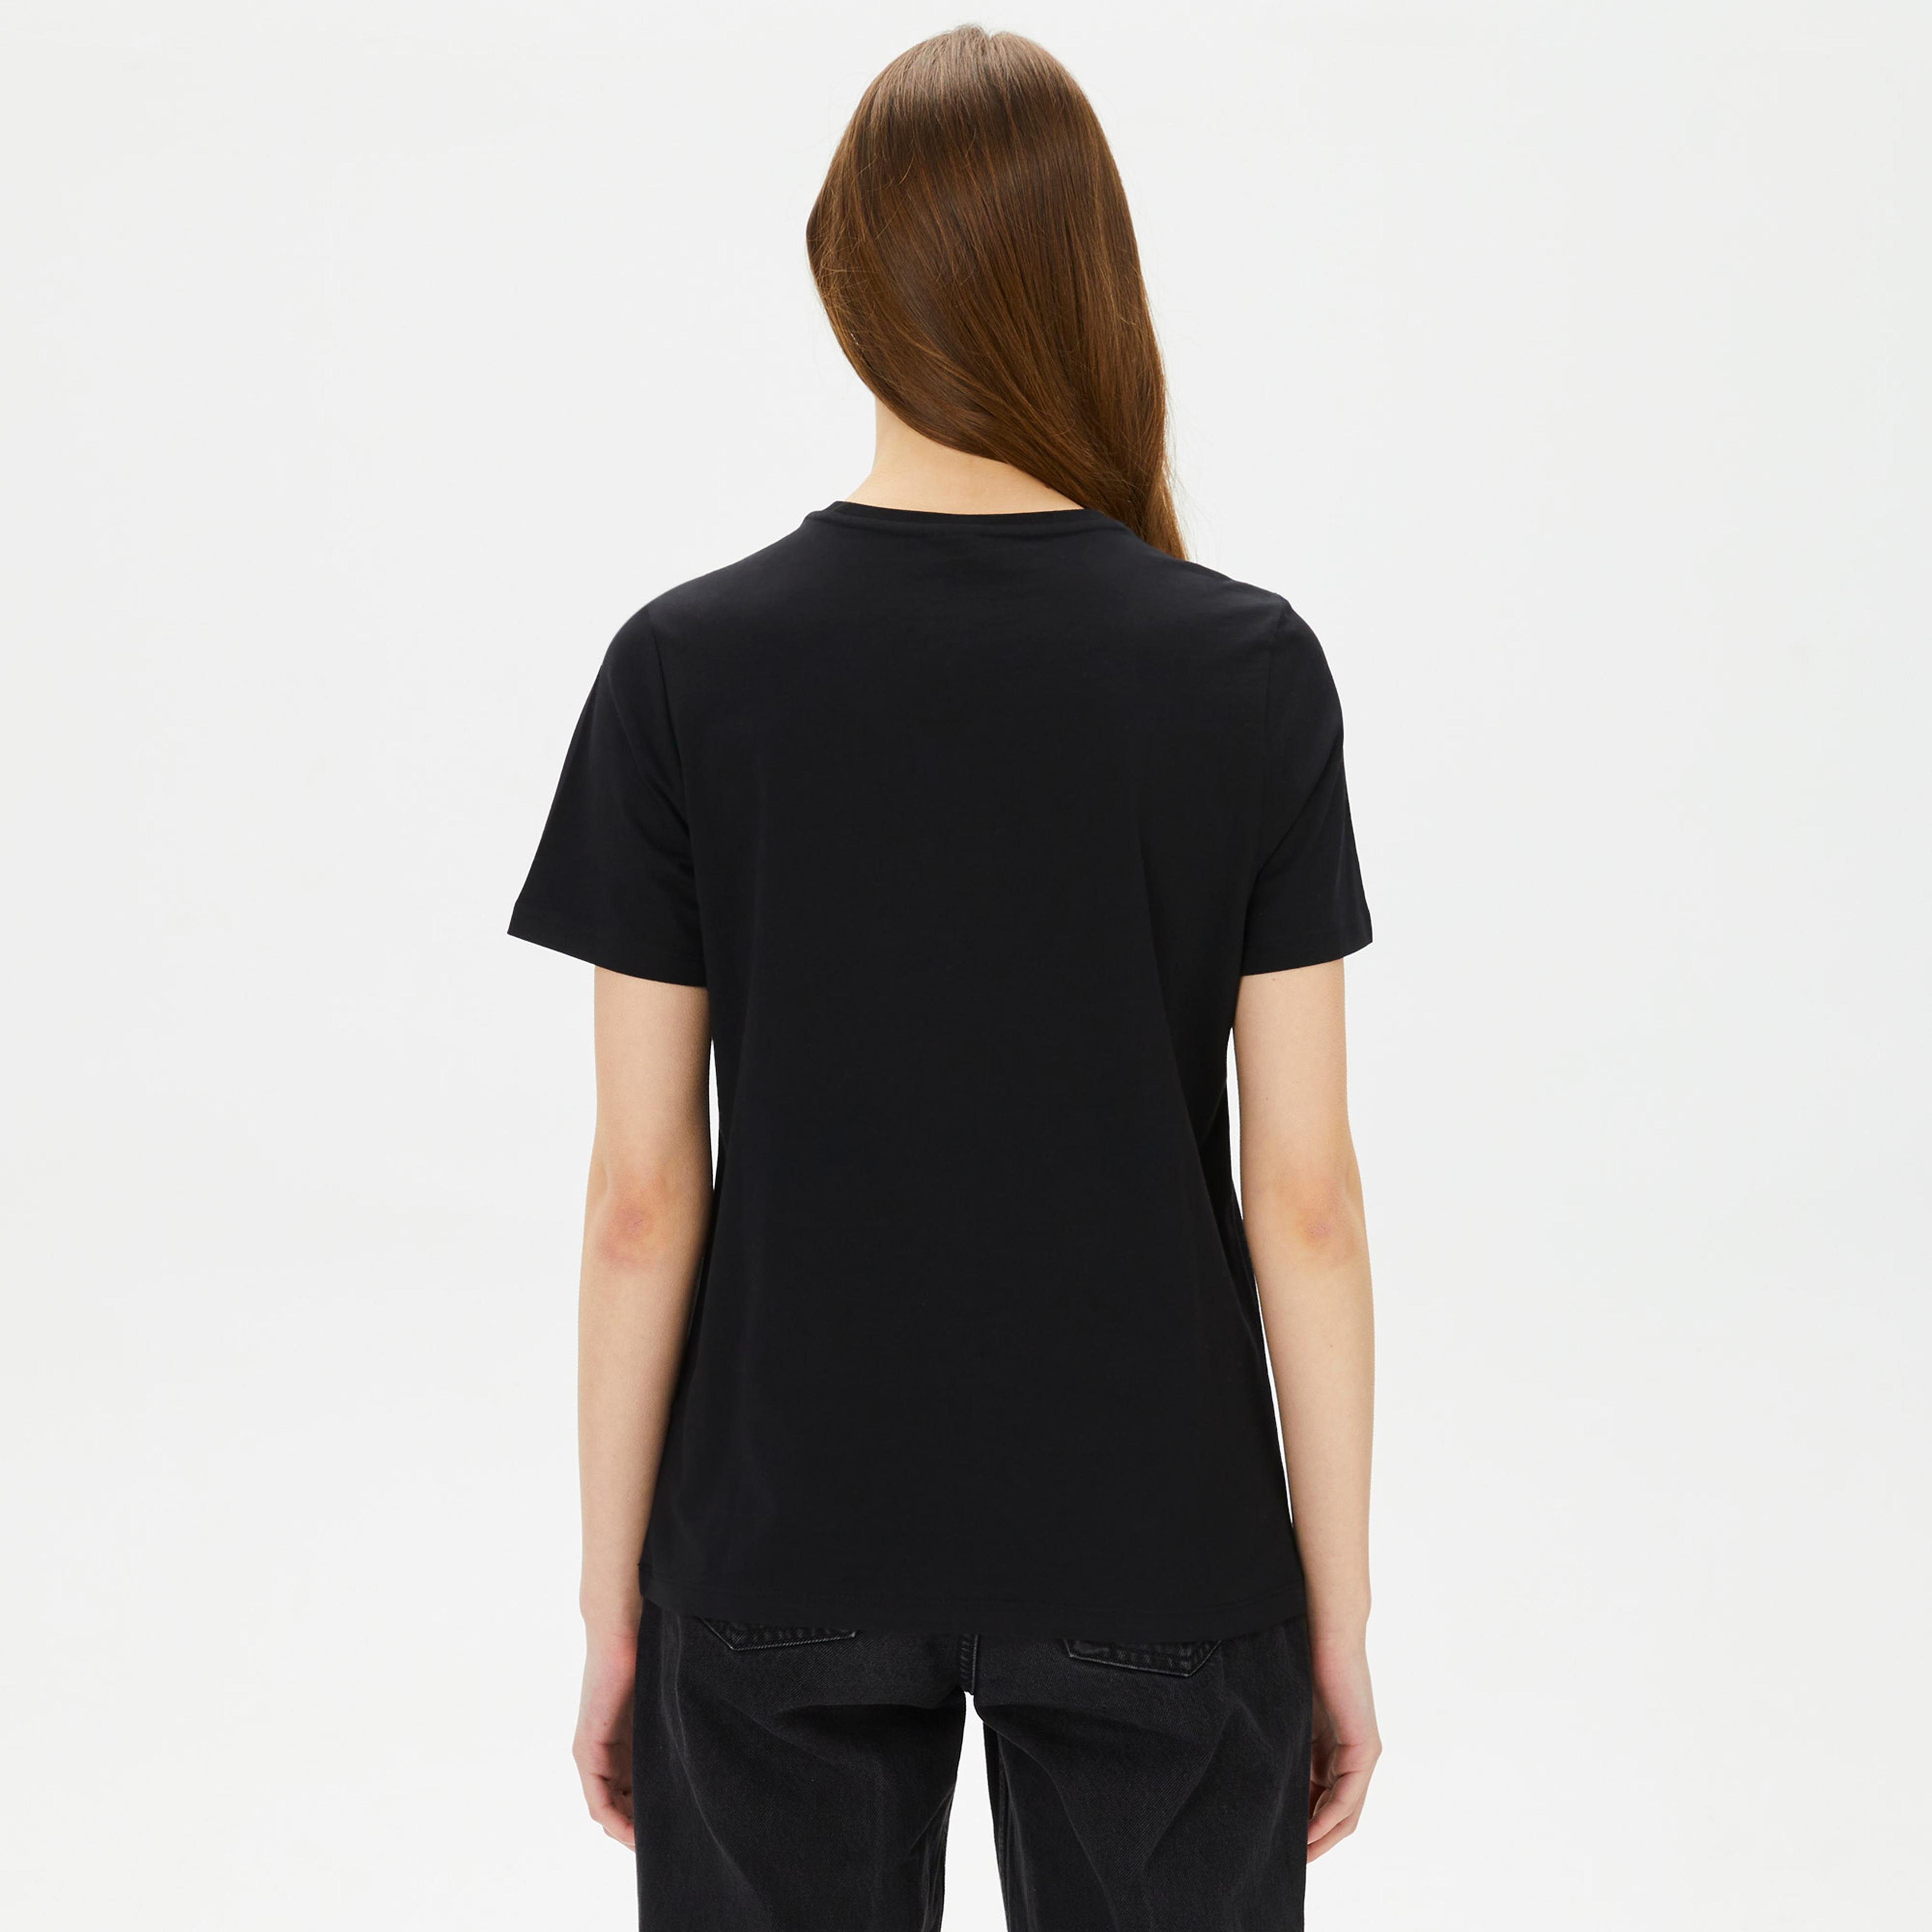 Reebok Modern Safari Graphic Kadın Siyah T-Shirt